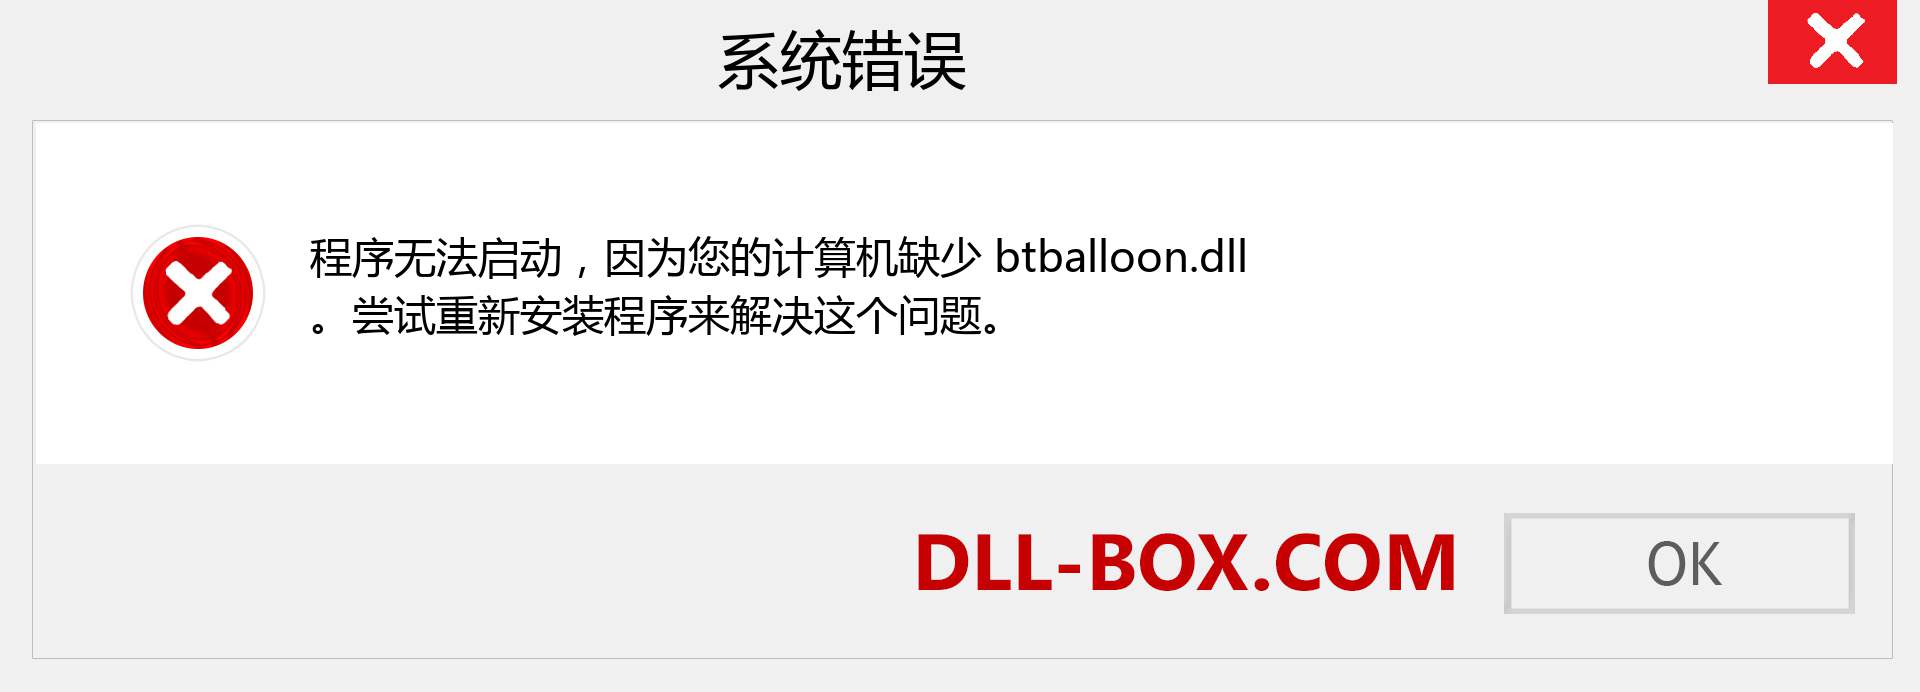 btballoon.dll 文件丢失？。 适用于 Windows 7、8、10 的下载 - 修复 Windows、照片、图像上的 btballoon dll 丢失错误